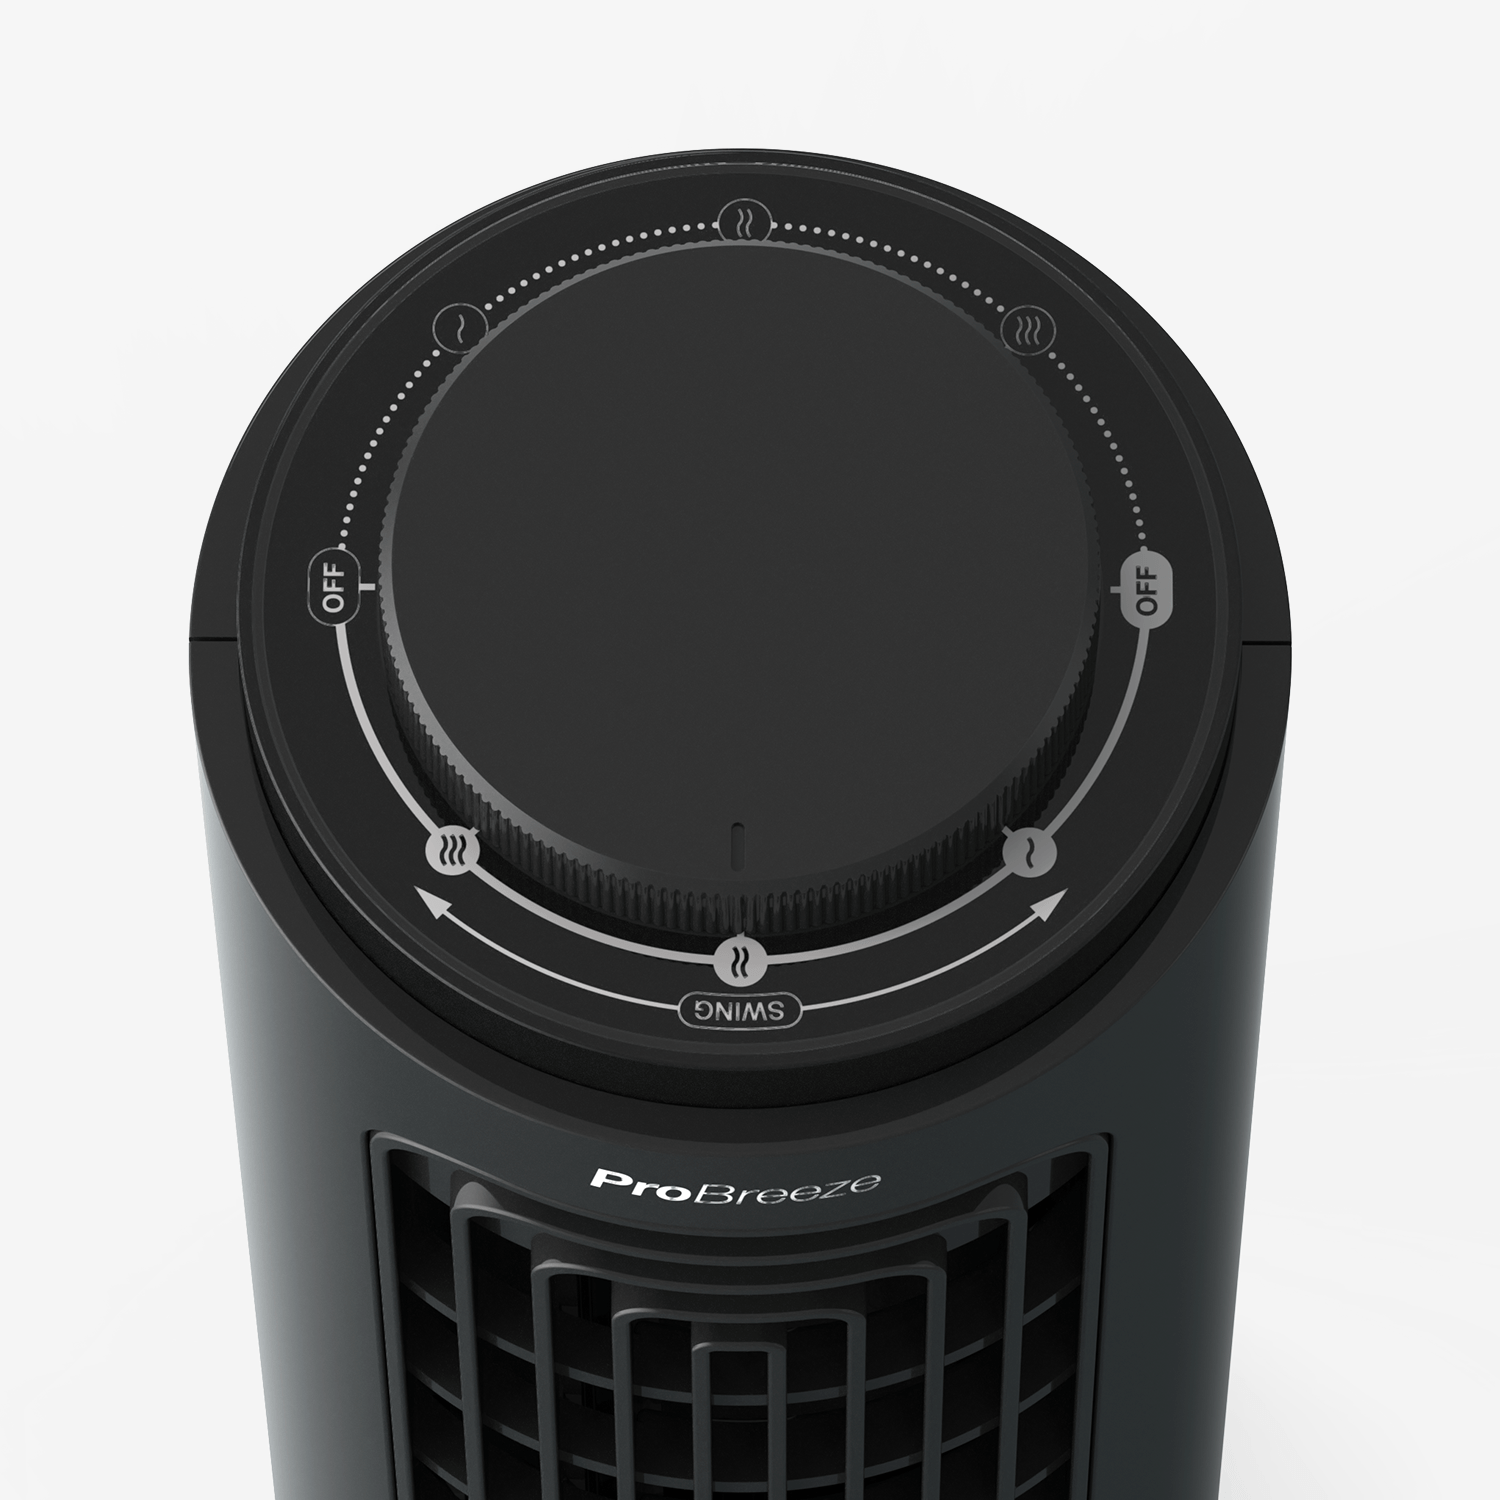 Mini ventilateur tour de bureau à 3 vitesses - Noir